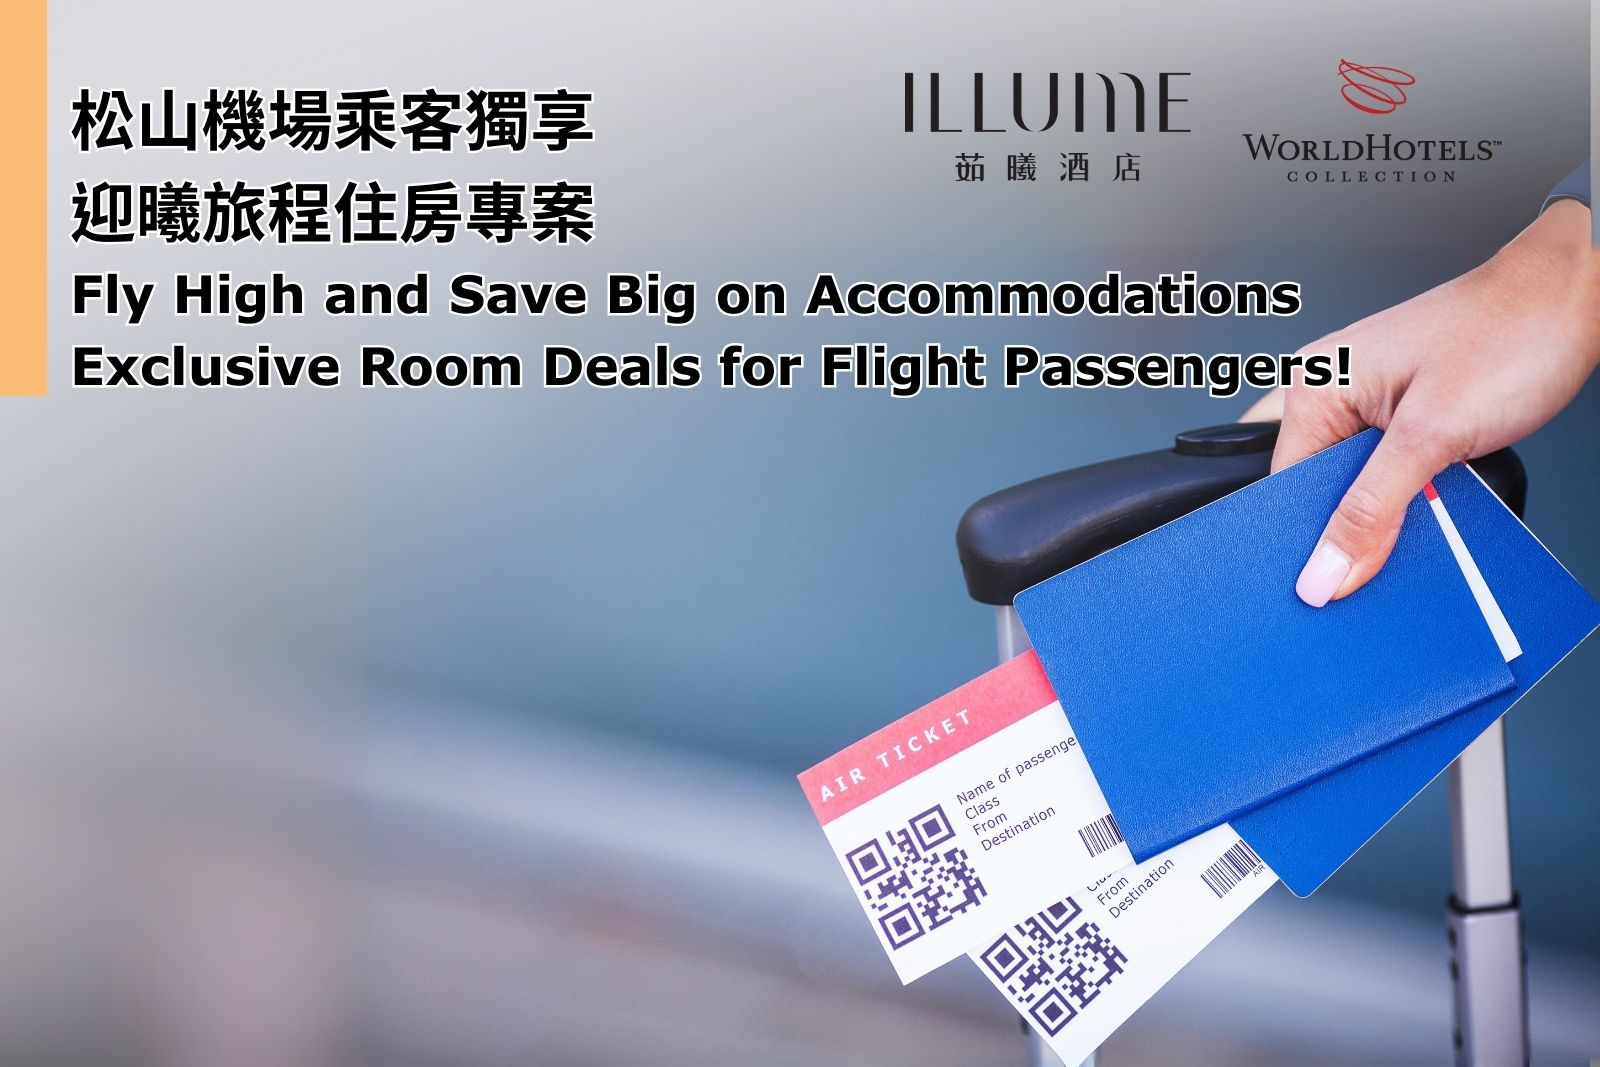 illume taipei flight passengers accommodation offer